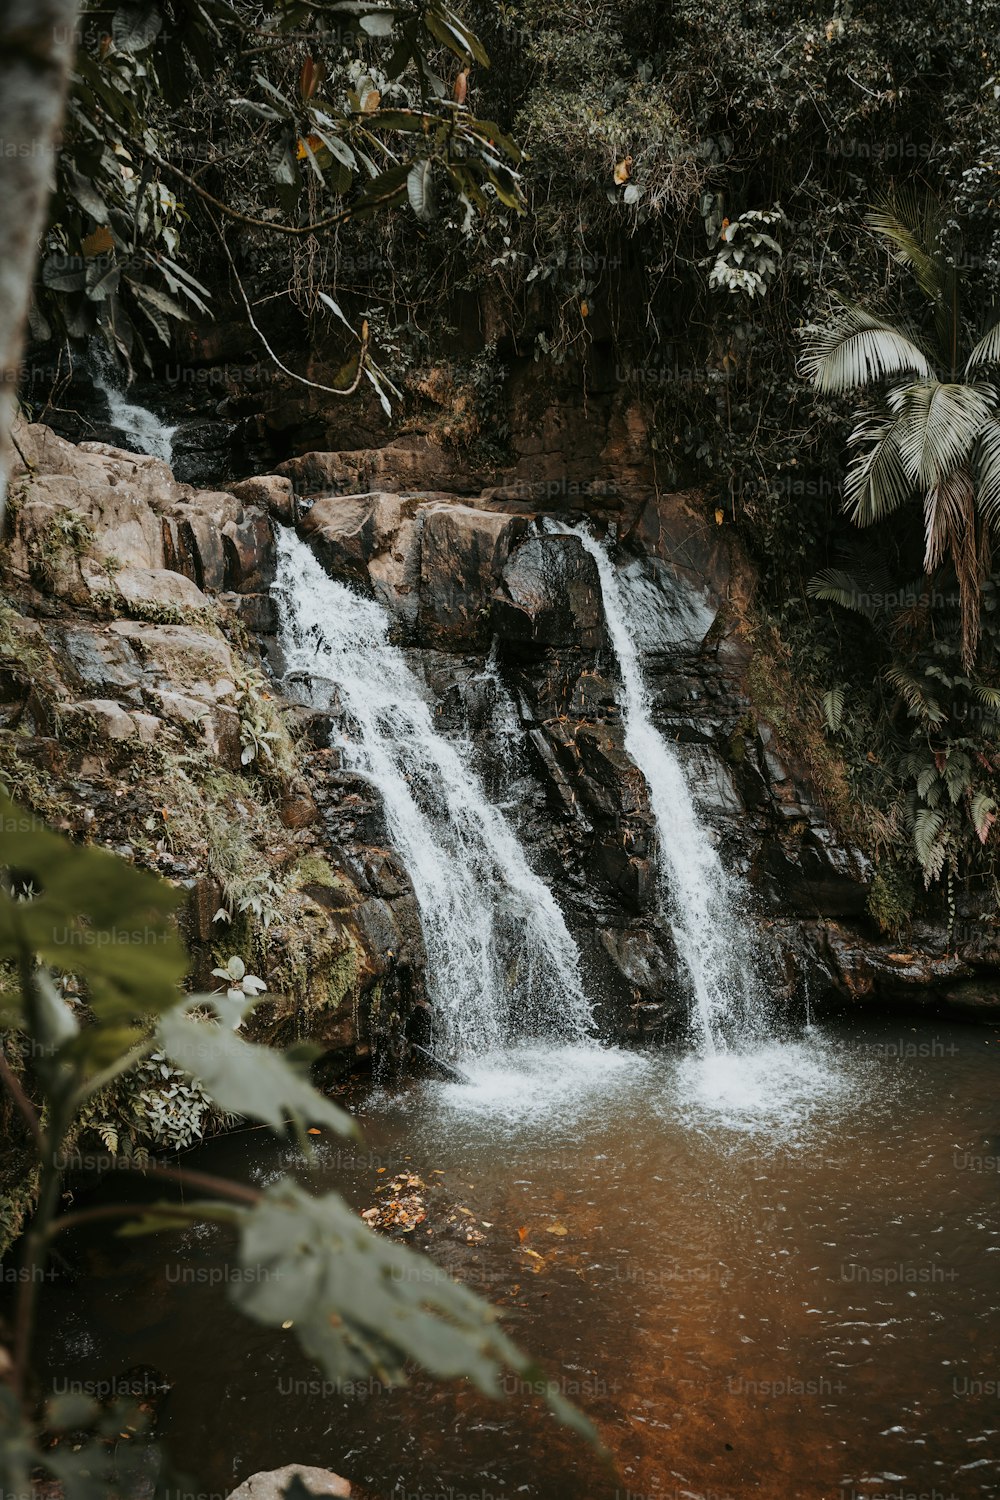 Una pequeña cascada en medio de una selva